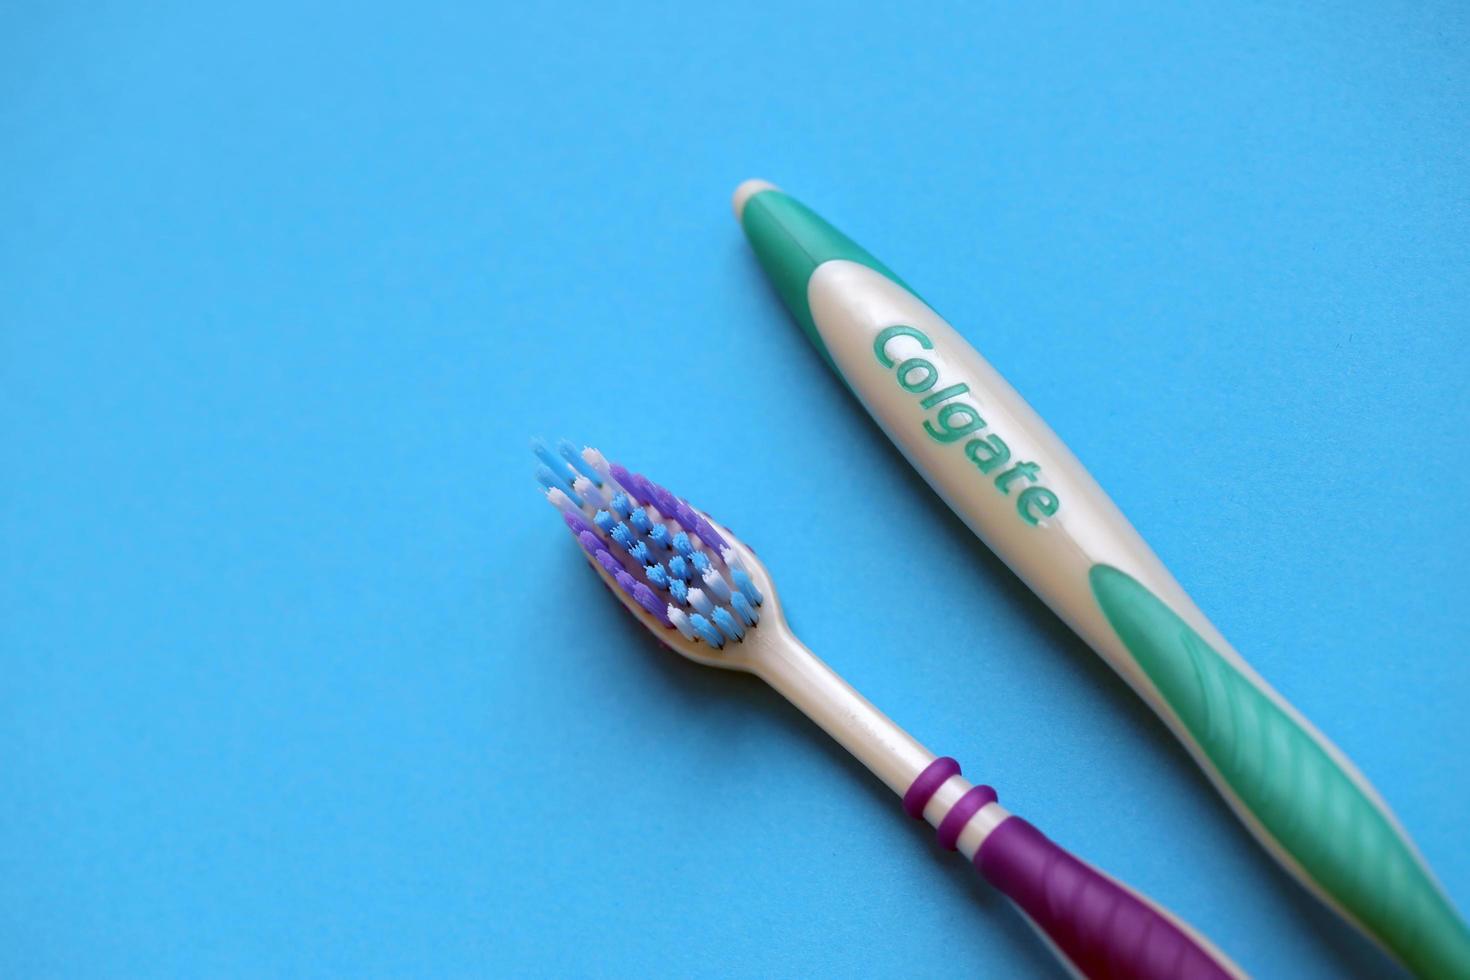 ternopil, ukraina - juni 23, 2022 colgate tandborstar, en varumärke av oral hygien Produkter tillverkad förbi amerikan konsumtionsvaror företag colgate-palmolive foto